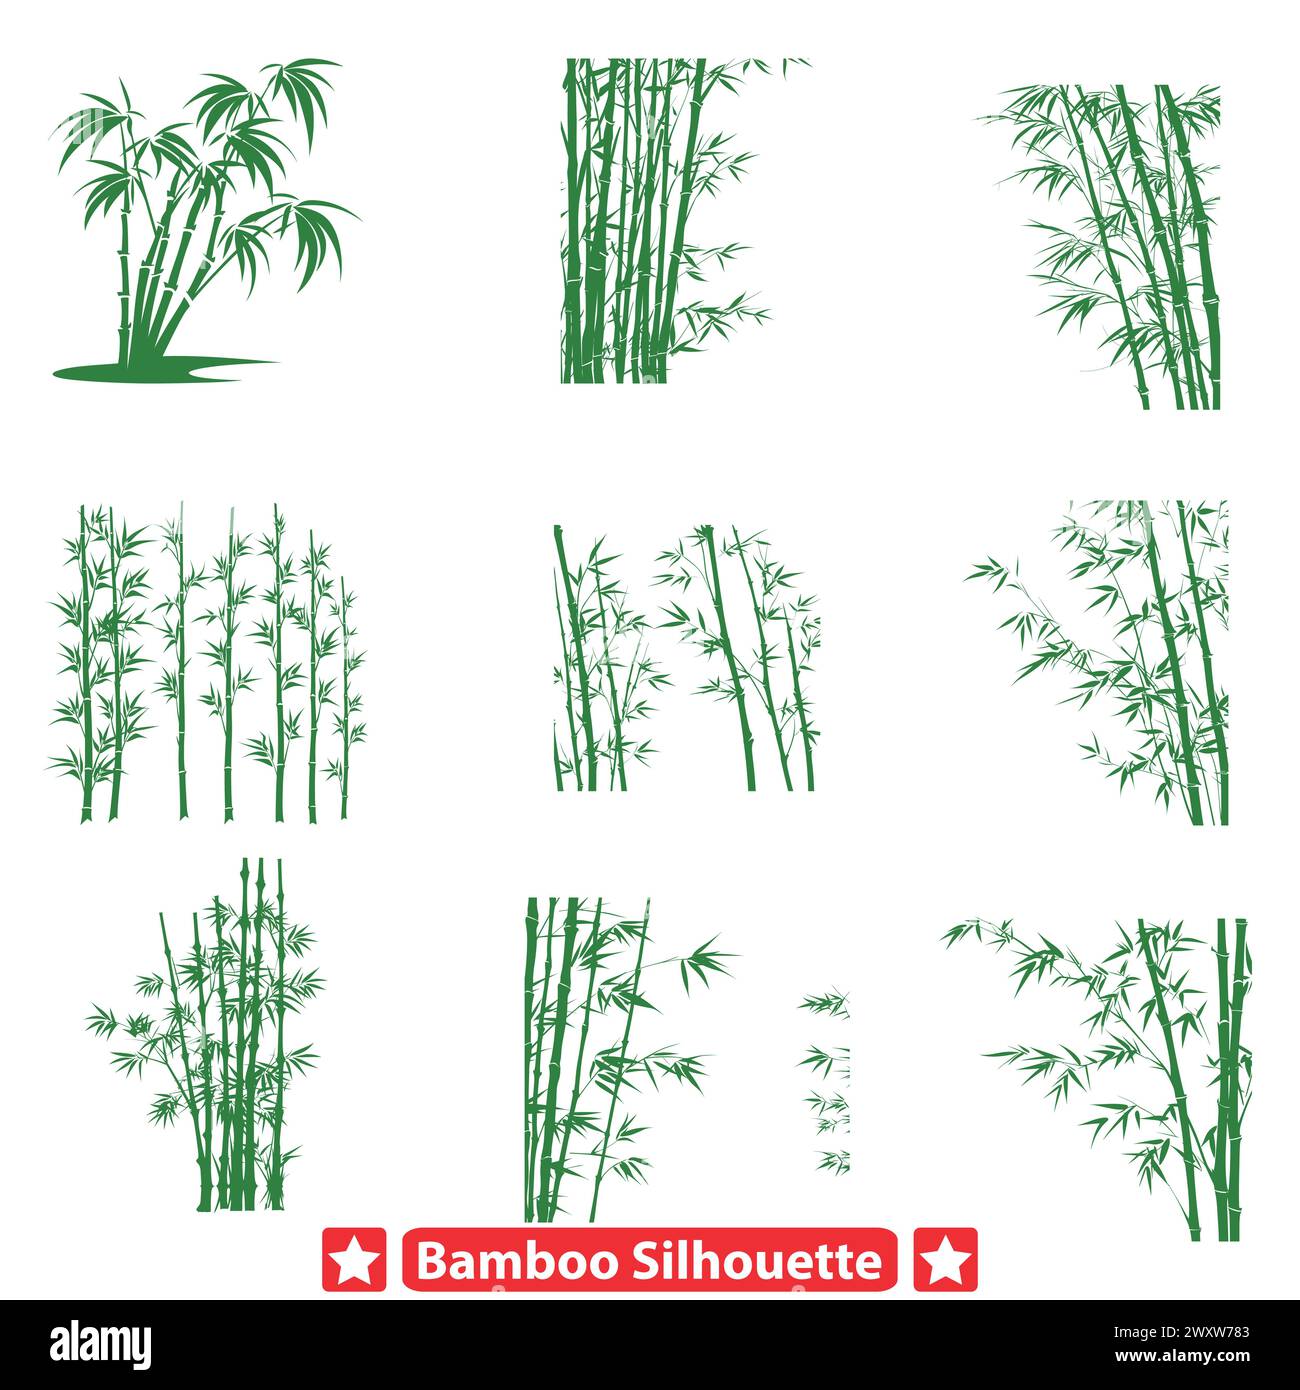 Harmonie in der Natur Bambus Silhouette Vektoren bieten Zenartige Inspirationen für Kreativität Stock Vektor